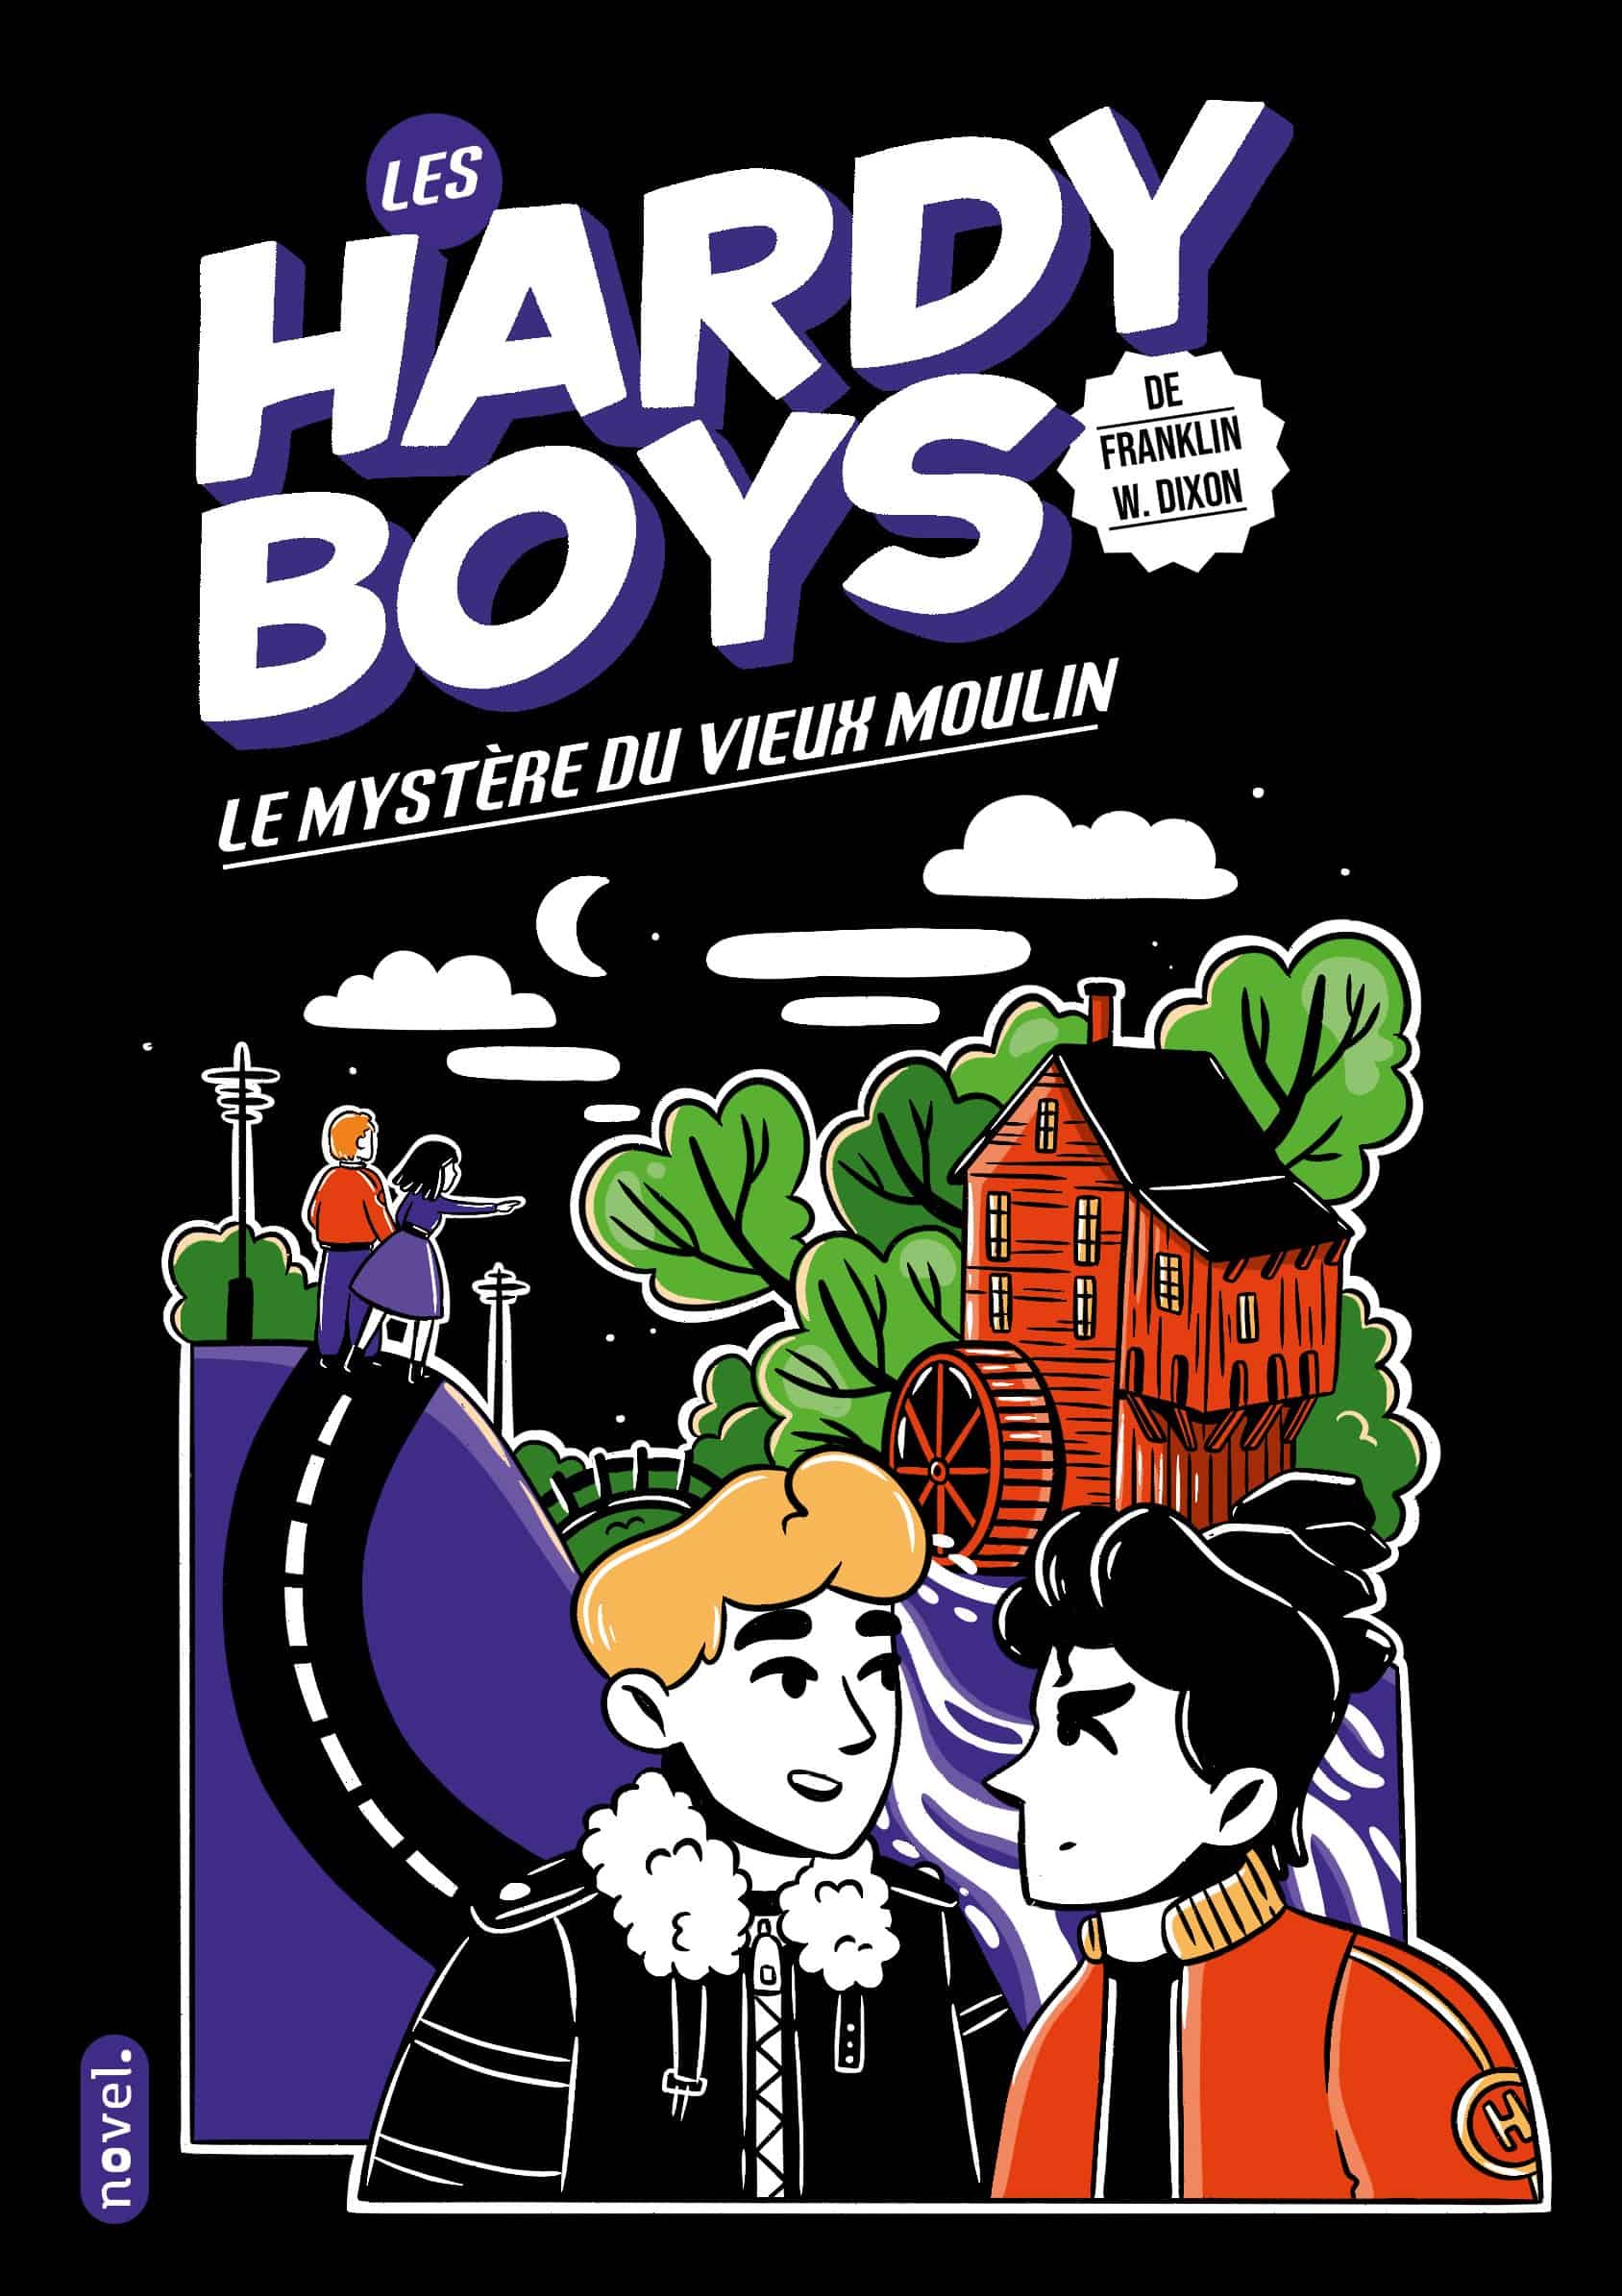 Les Hardy boys : Le Mystère du vieux moulin